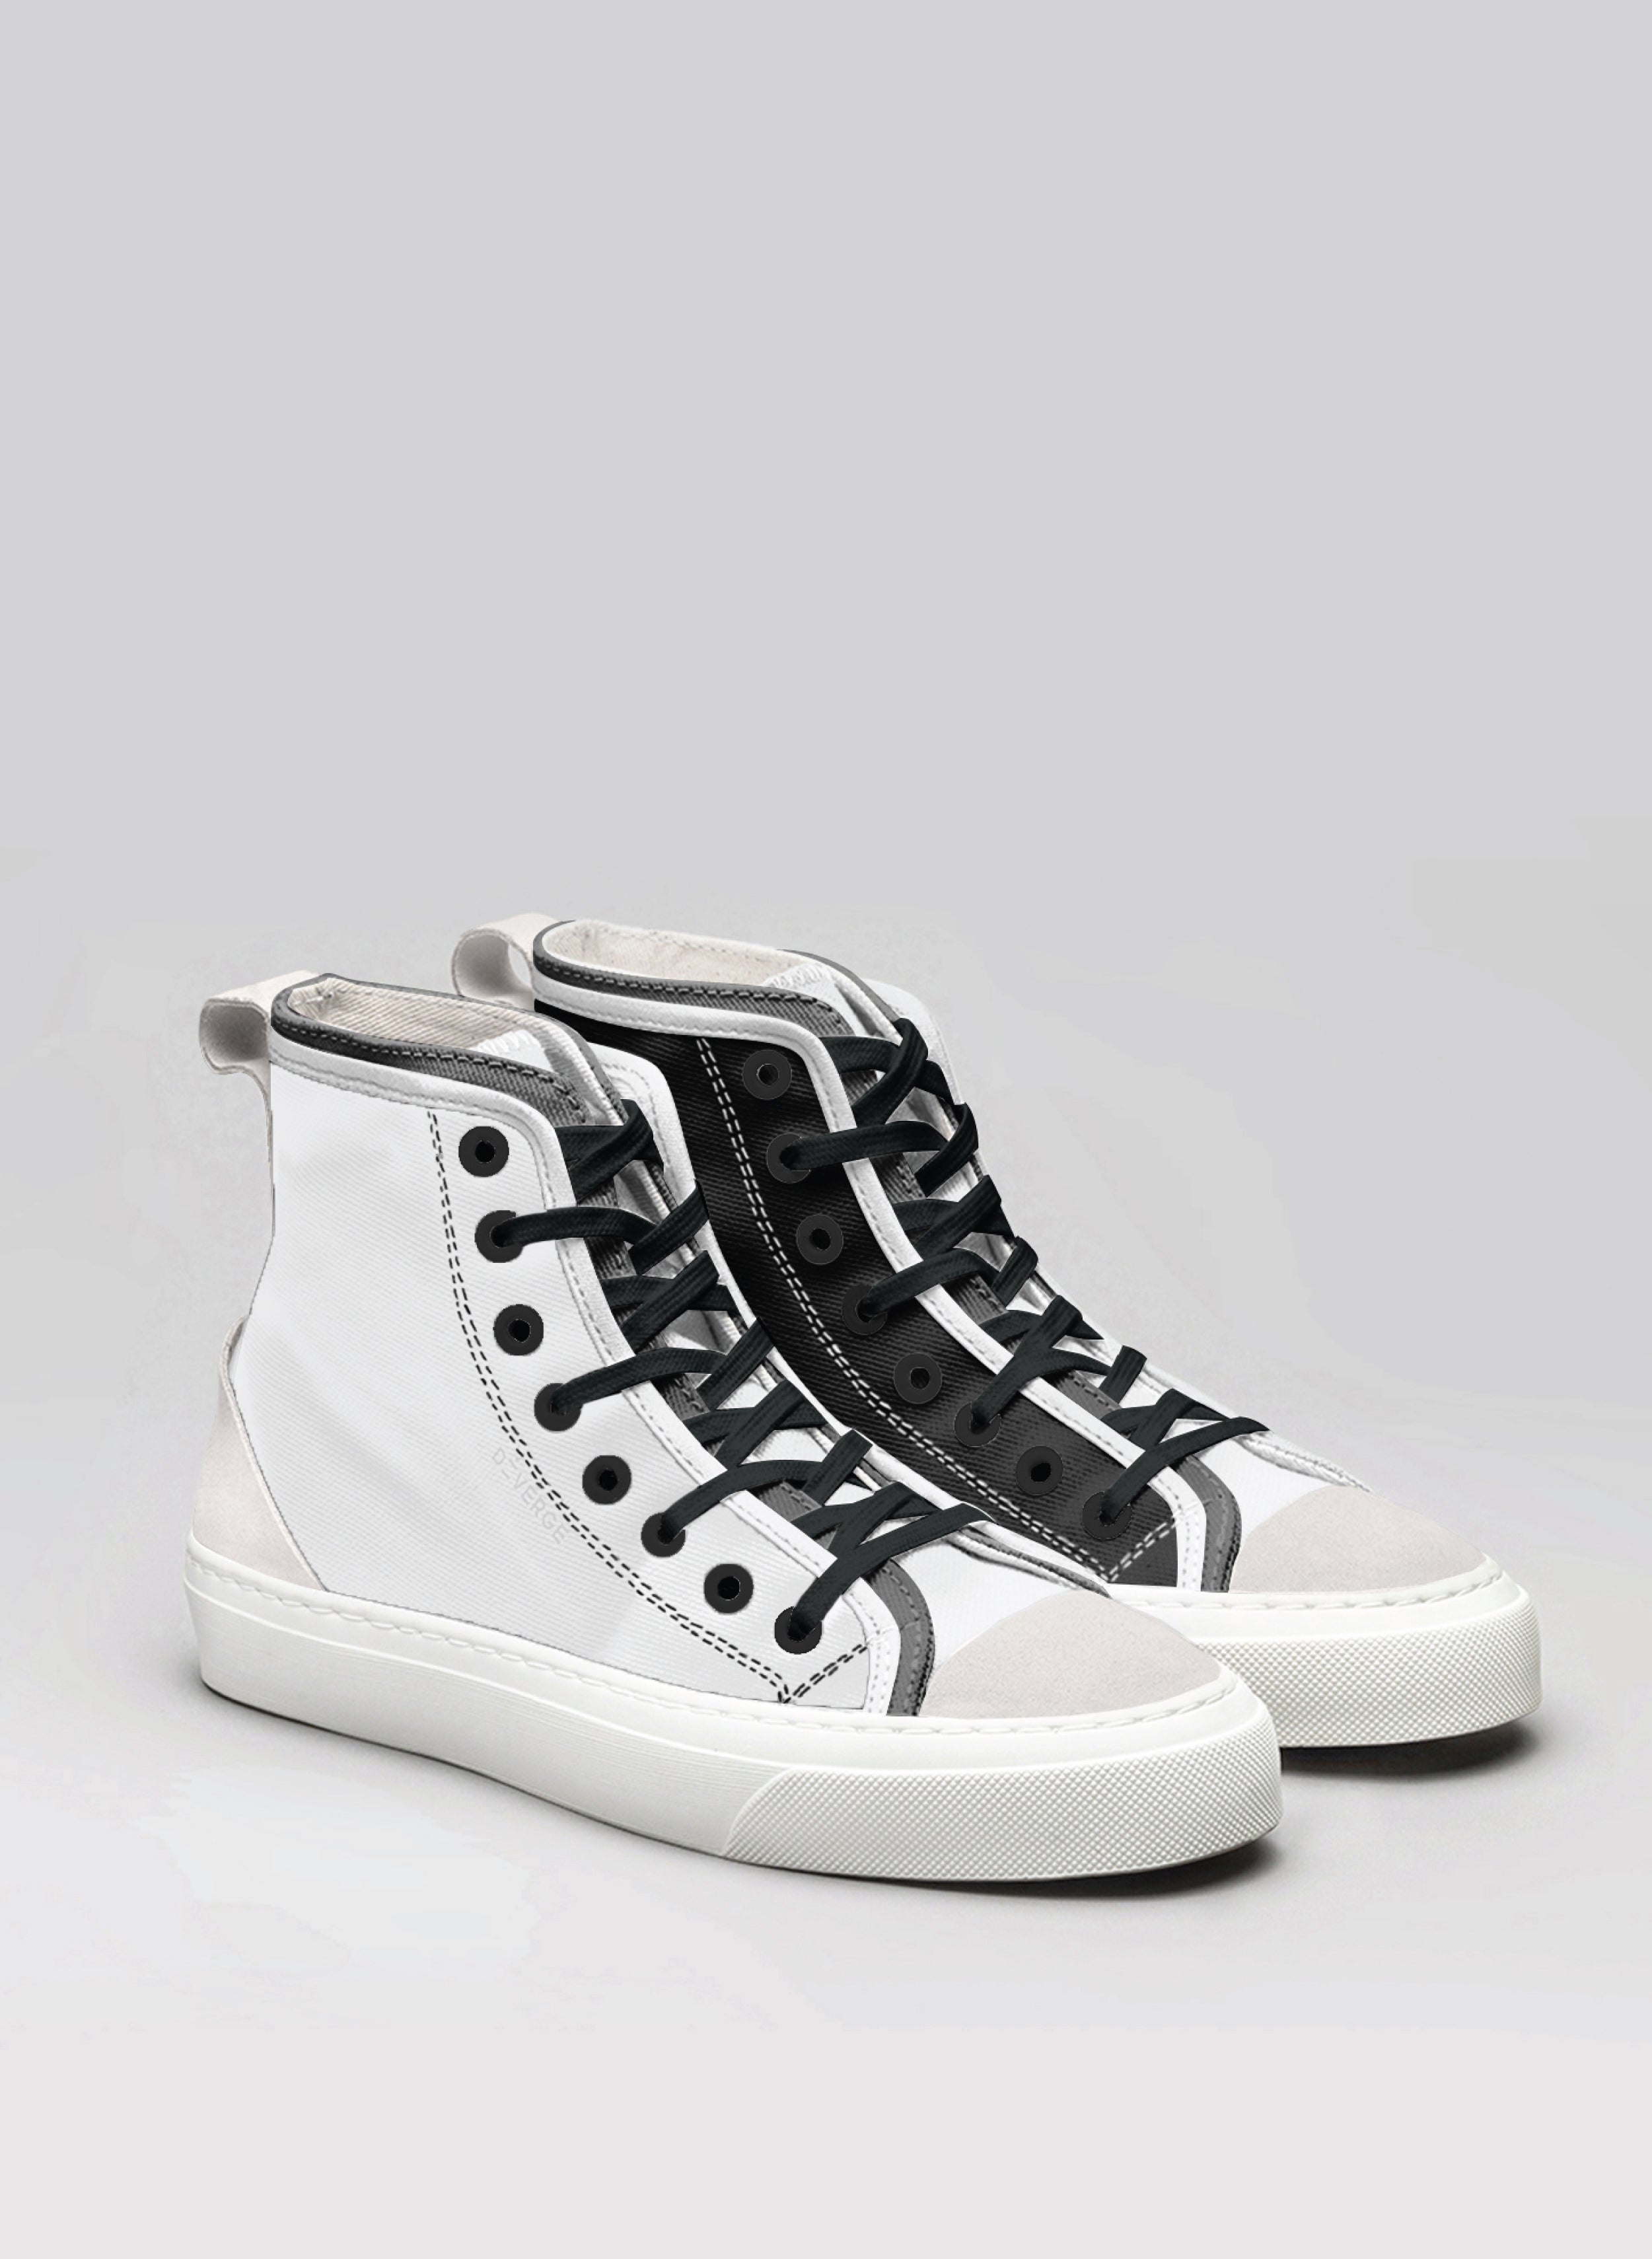 Unas zapatillas altas en blanco y negro Diverge sneakers , un par de zapatillas a medida.